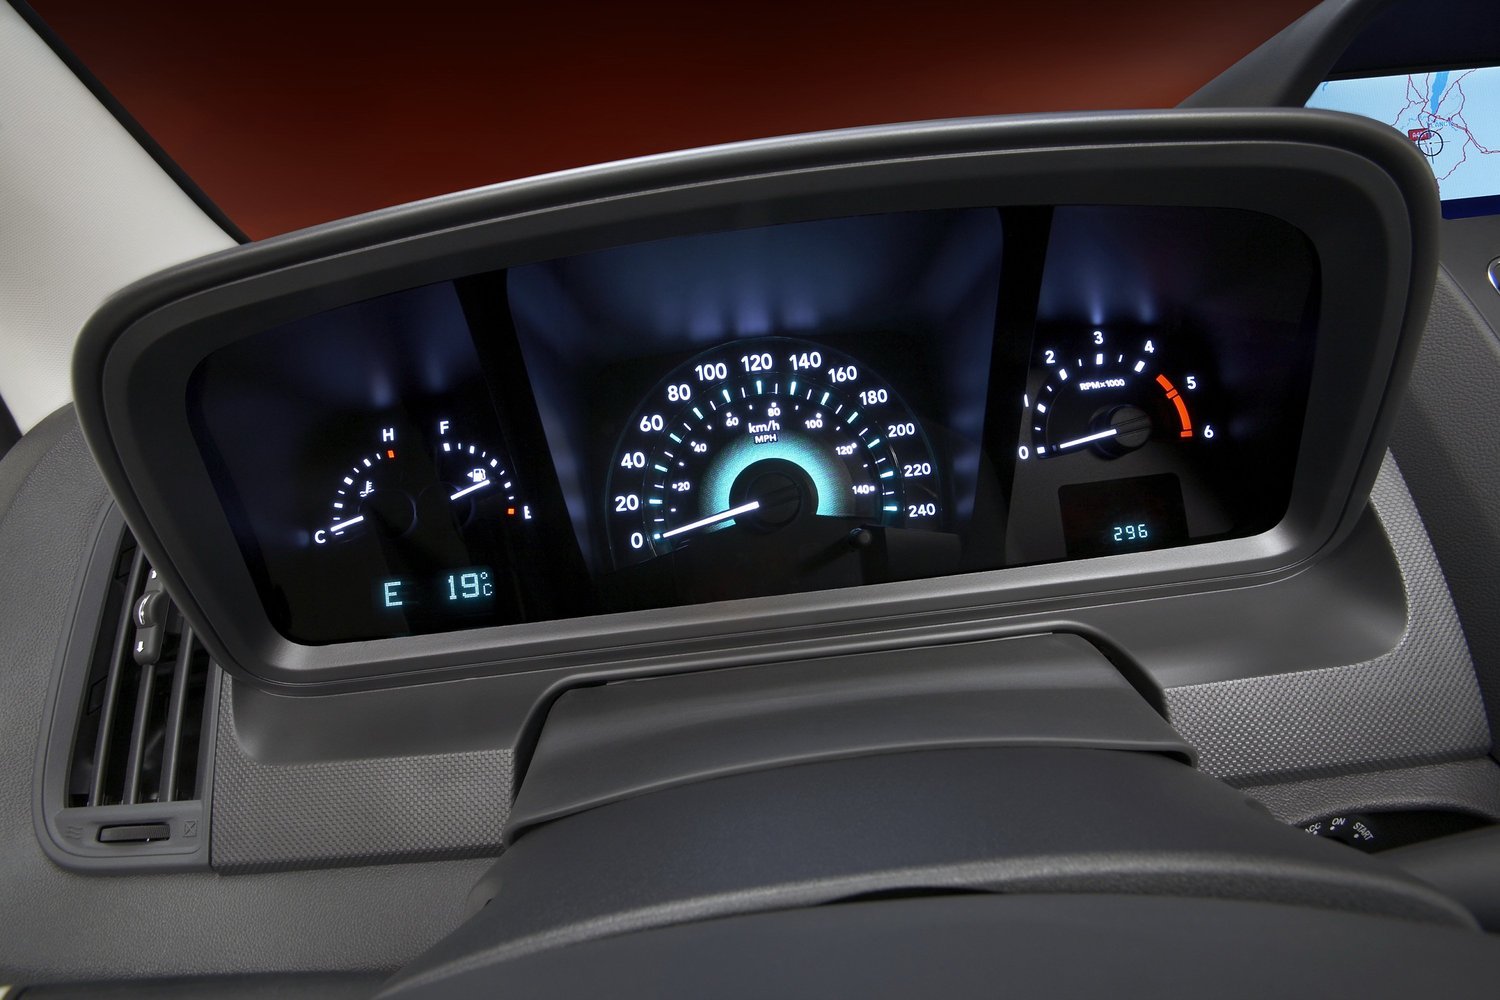 кроссовер Dodge Journey 2008 - 2016г выпуска модификация 3.6 AT (283 л.с.)